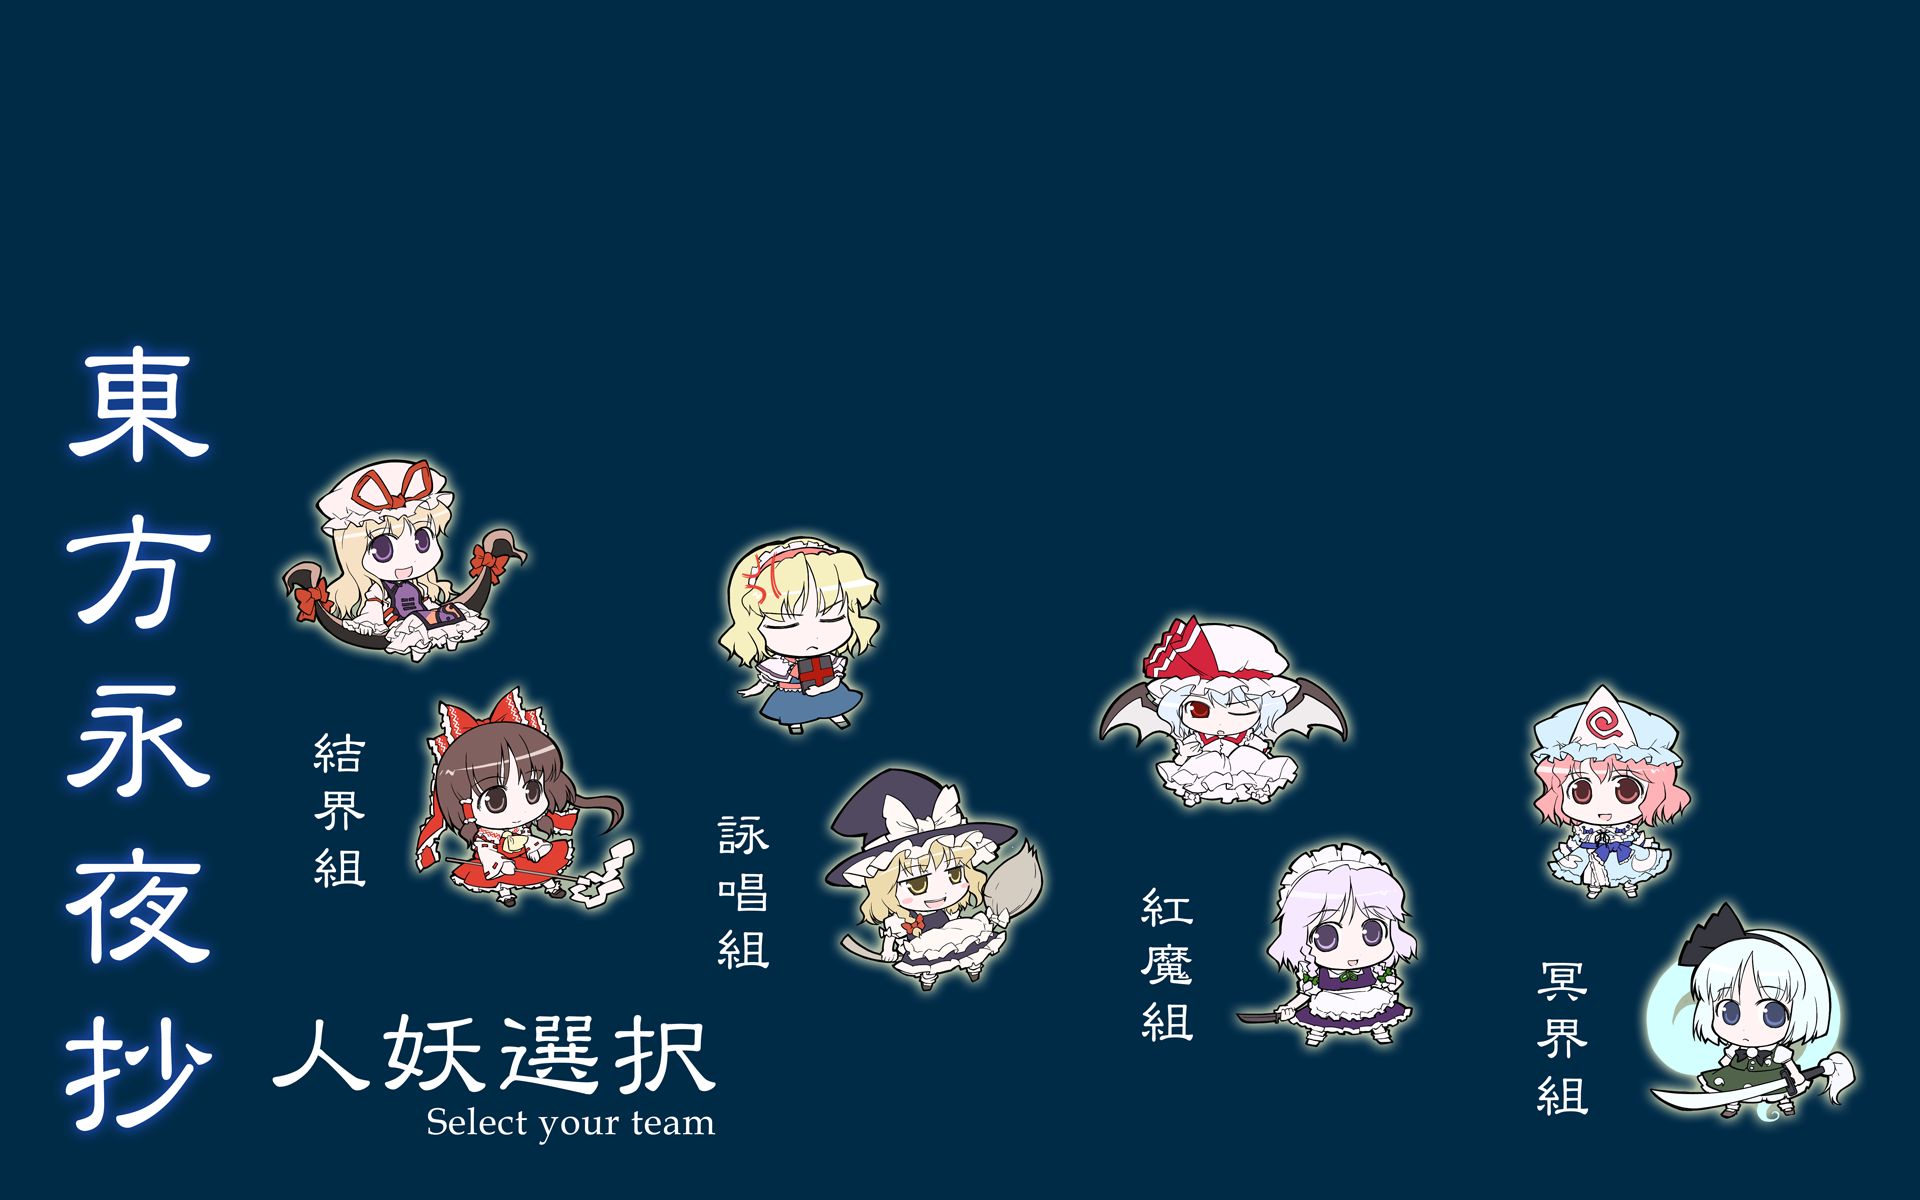 Baixar papel de parede para celular de Anime, Remilia Scarlet, Touhou, Youmu Konpaku, Reimu Hakurei, Sakuya Izayoi, Yukari Yakumo, Marisa Kirisame, Alice Margatroid, Yuyuko Saigyouji, Myon (Touhou) gratuito.